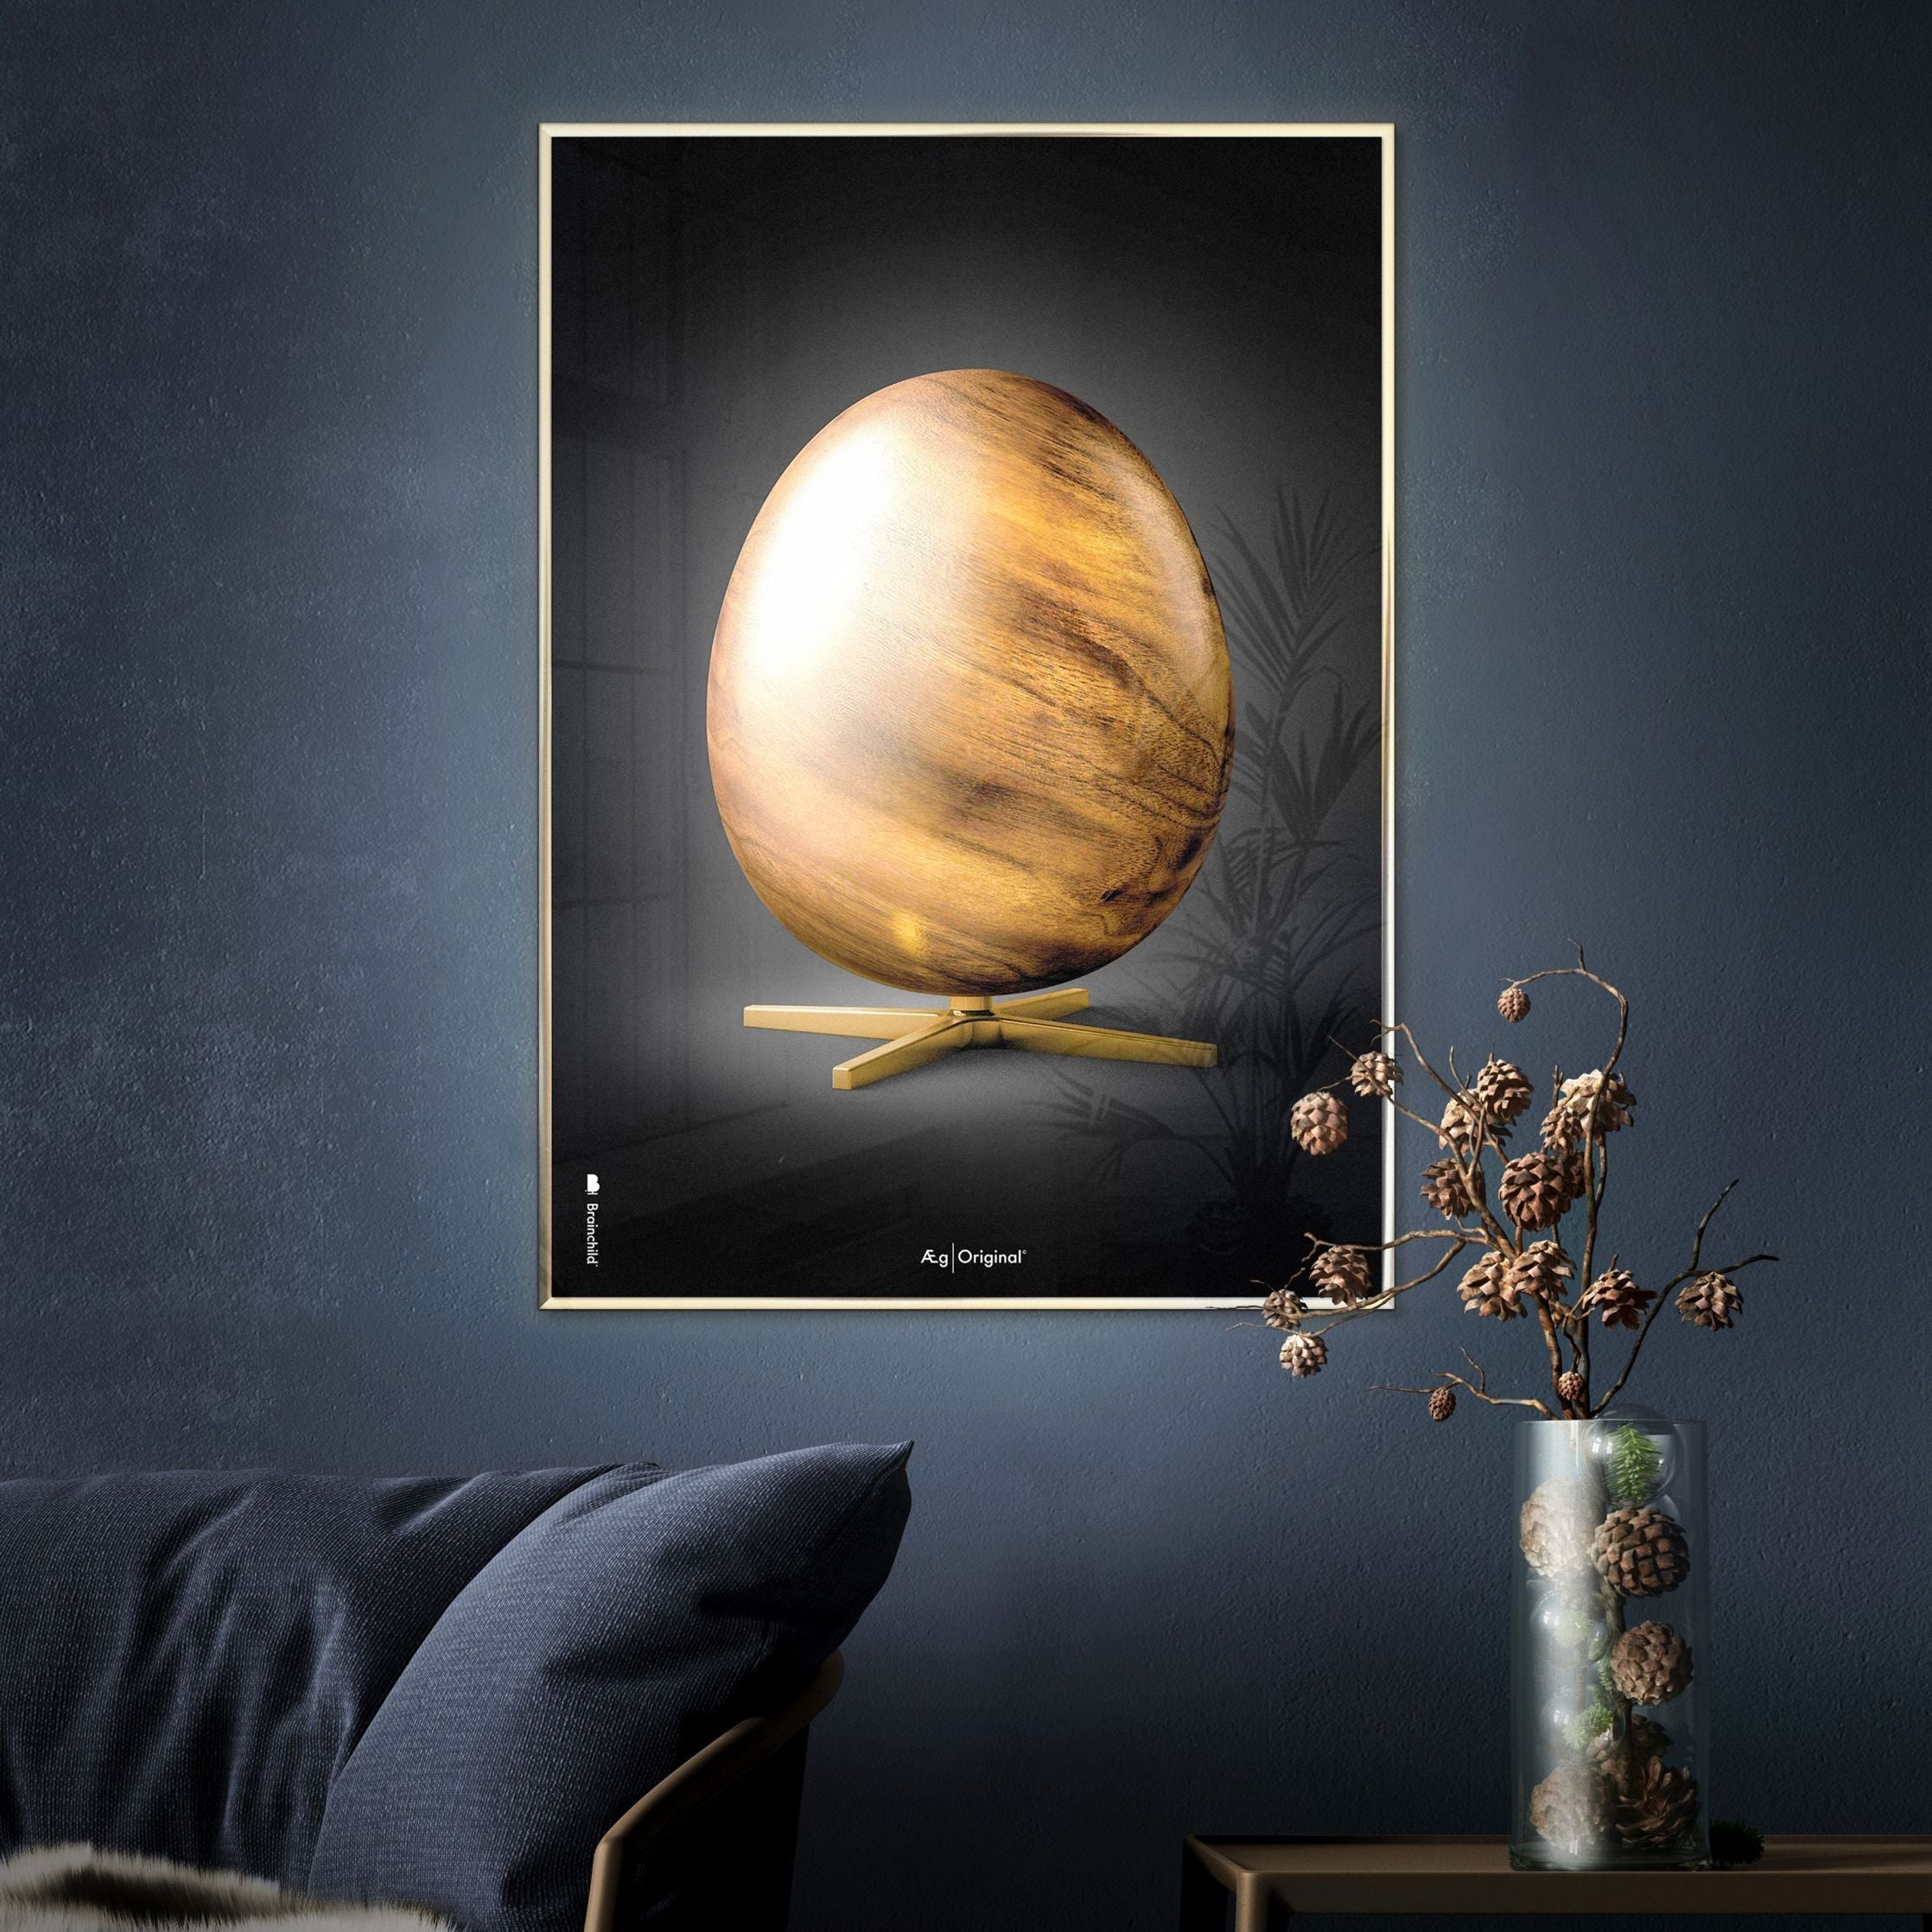 Brainchild Egg Figures Poster, Frame Made Of Light Wood 70x100 Cm, Black